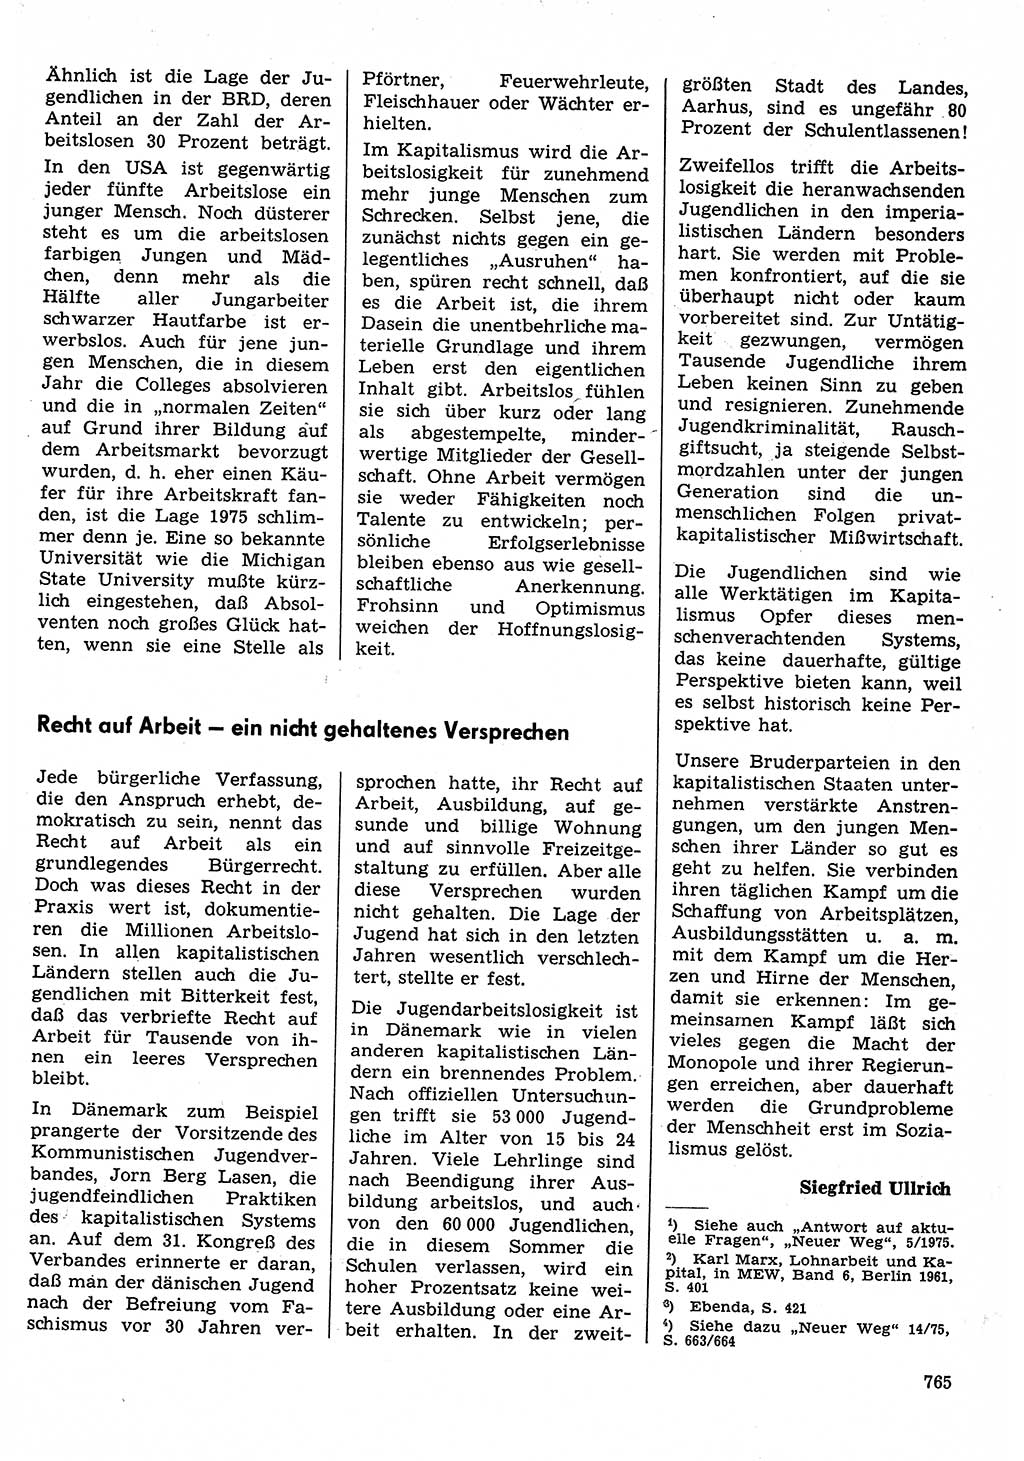 Neuer Weg (NW), Organ des Zentralkomitees (ZK) der SED (Sozialistische Einheitspartei Deutschlands) für Fragen des Parteilebens, 30. Jahrgang [Deutsche Demokratische Republik (DDR)] 1975, Seite 765 (NW ZK SED DDR 1975, S. 765)